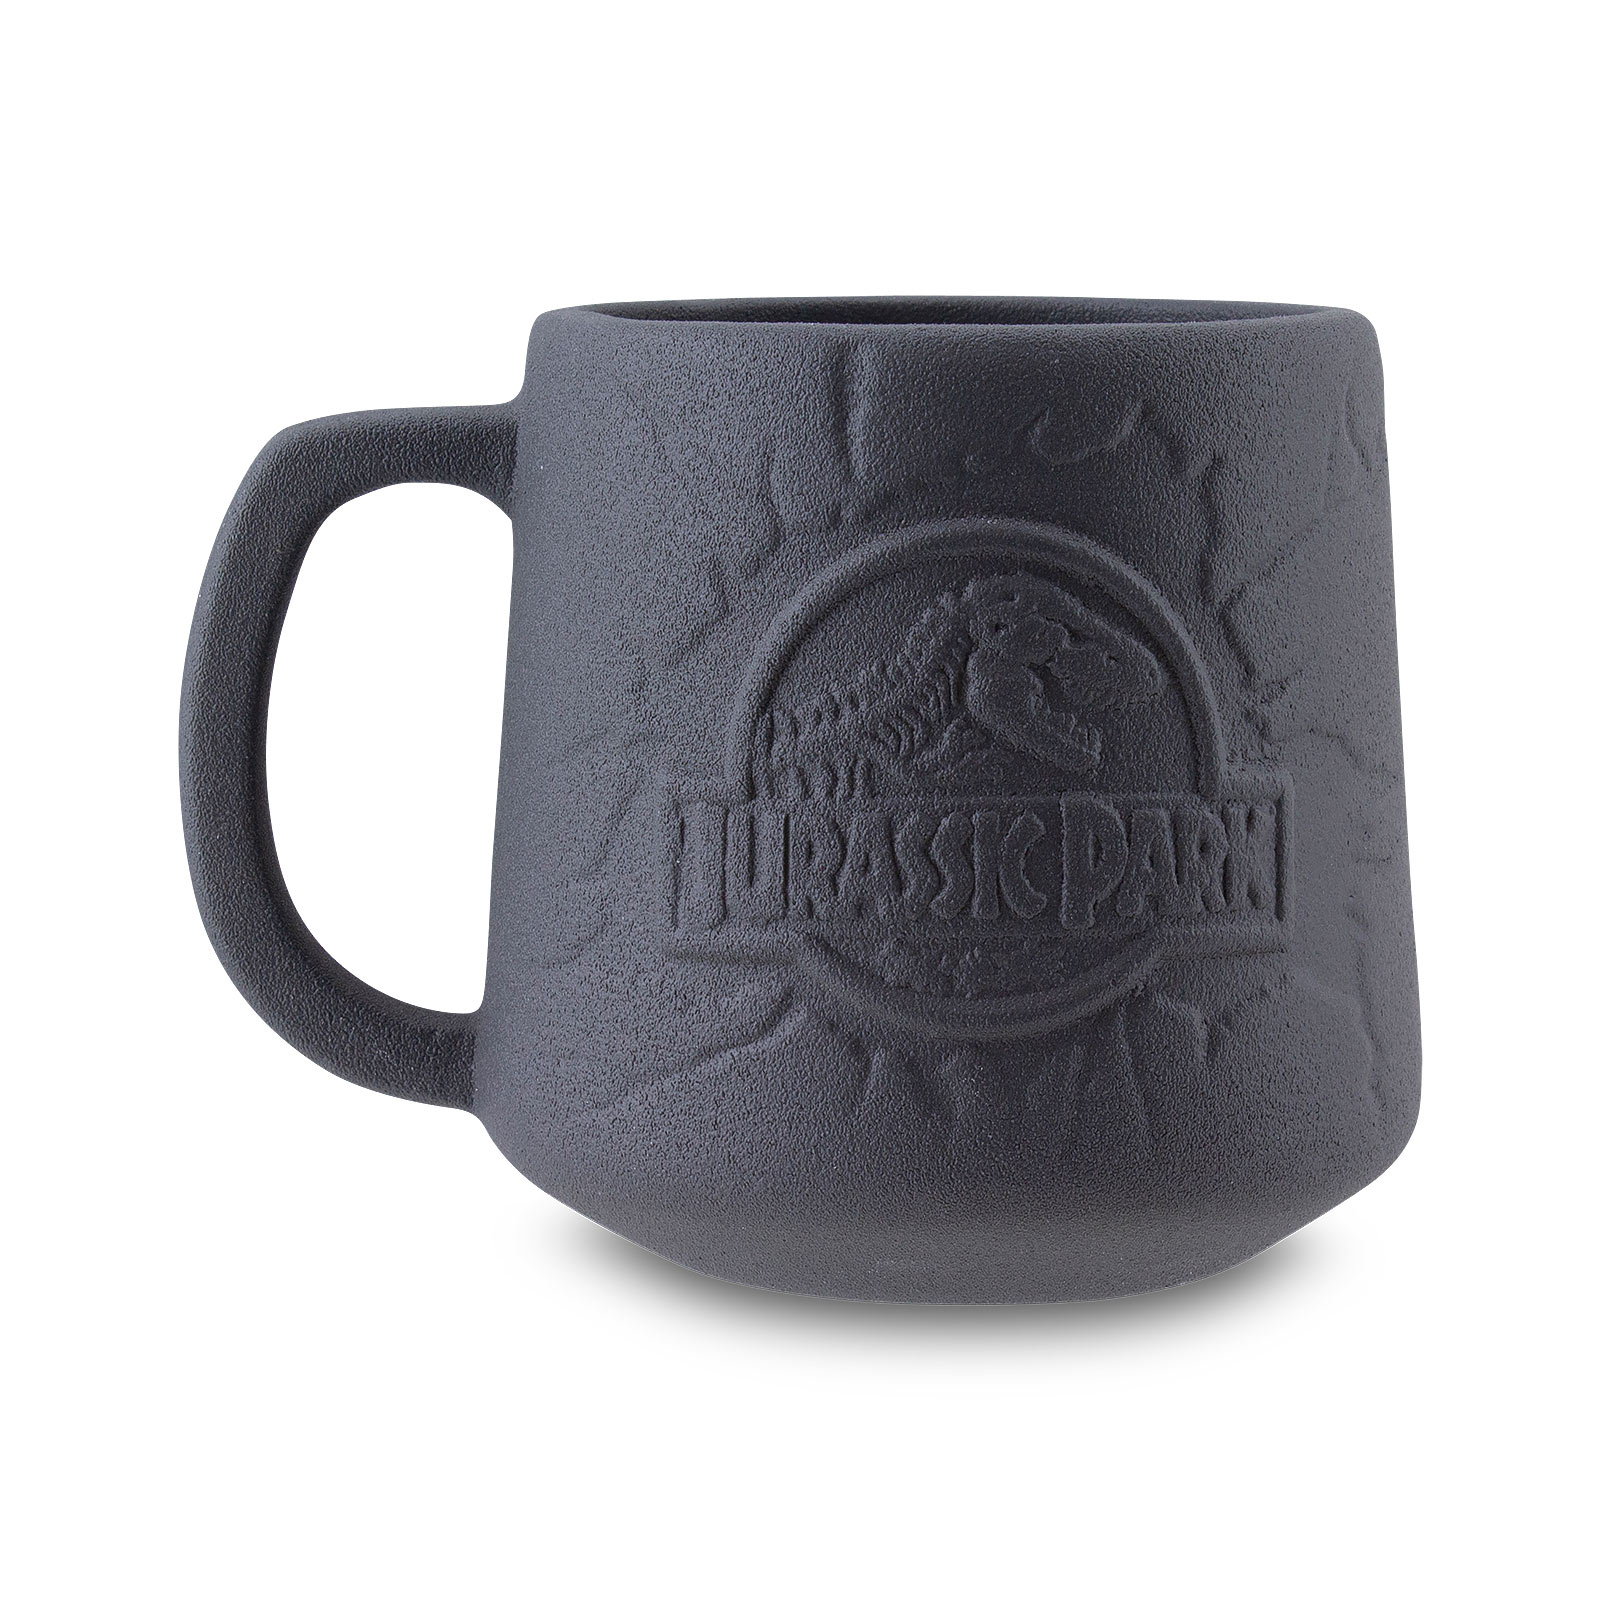 Jurassic Park - Logo Mug grey